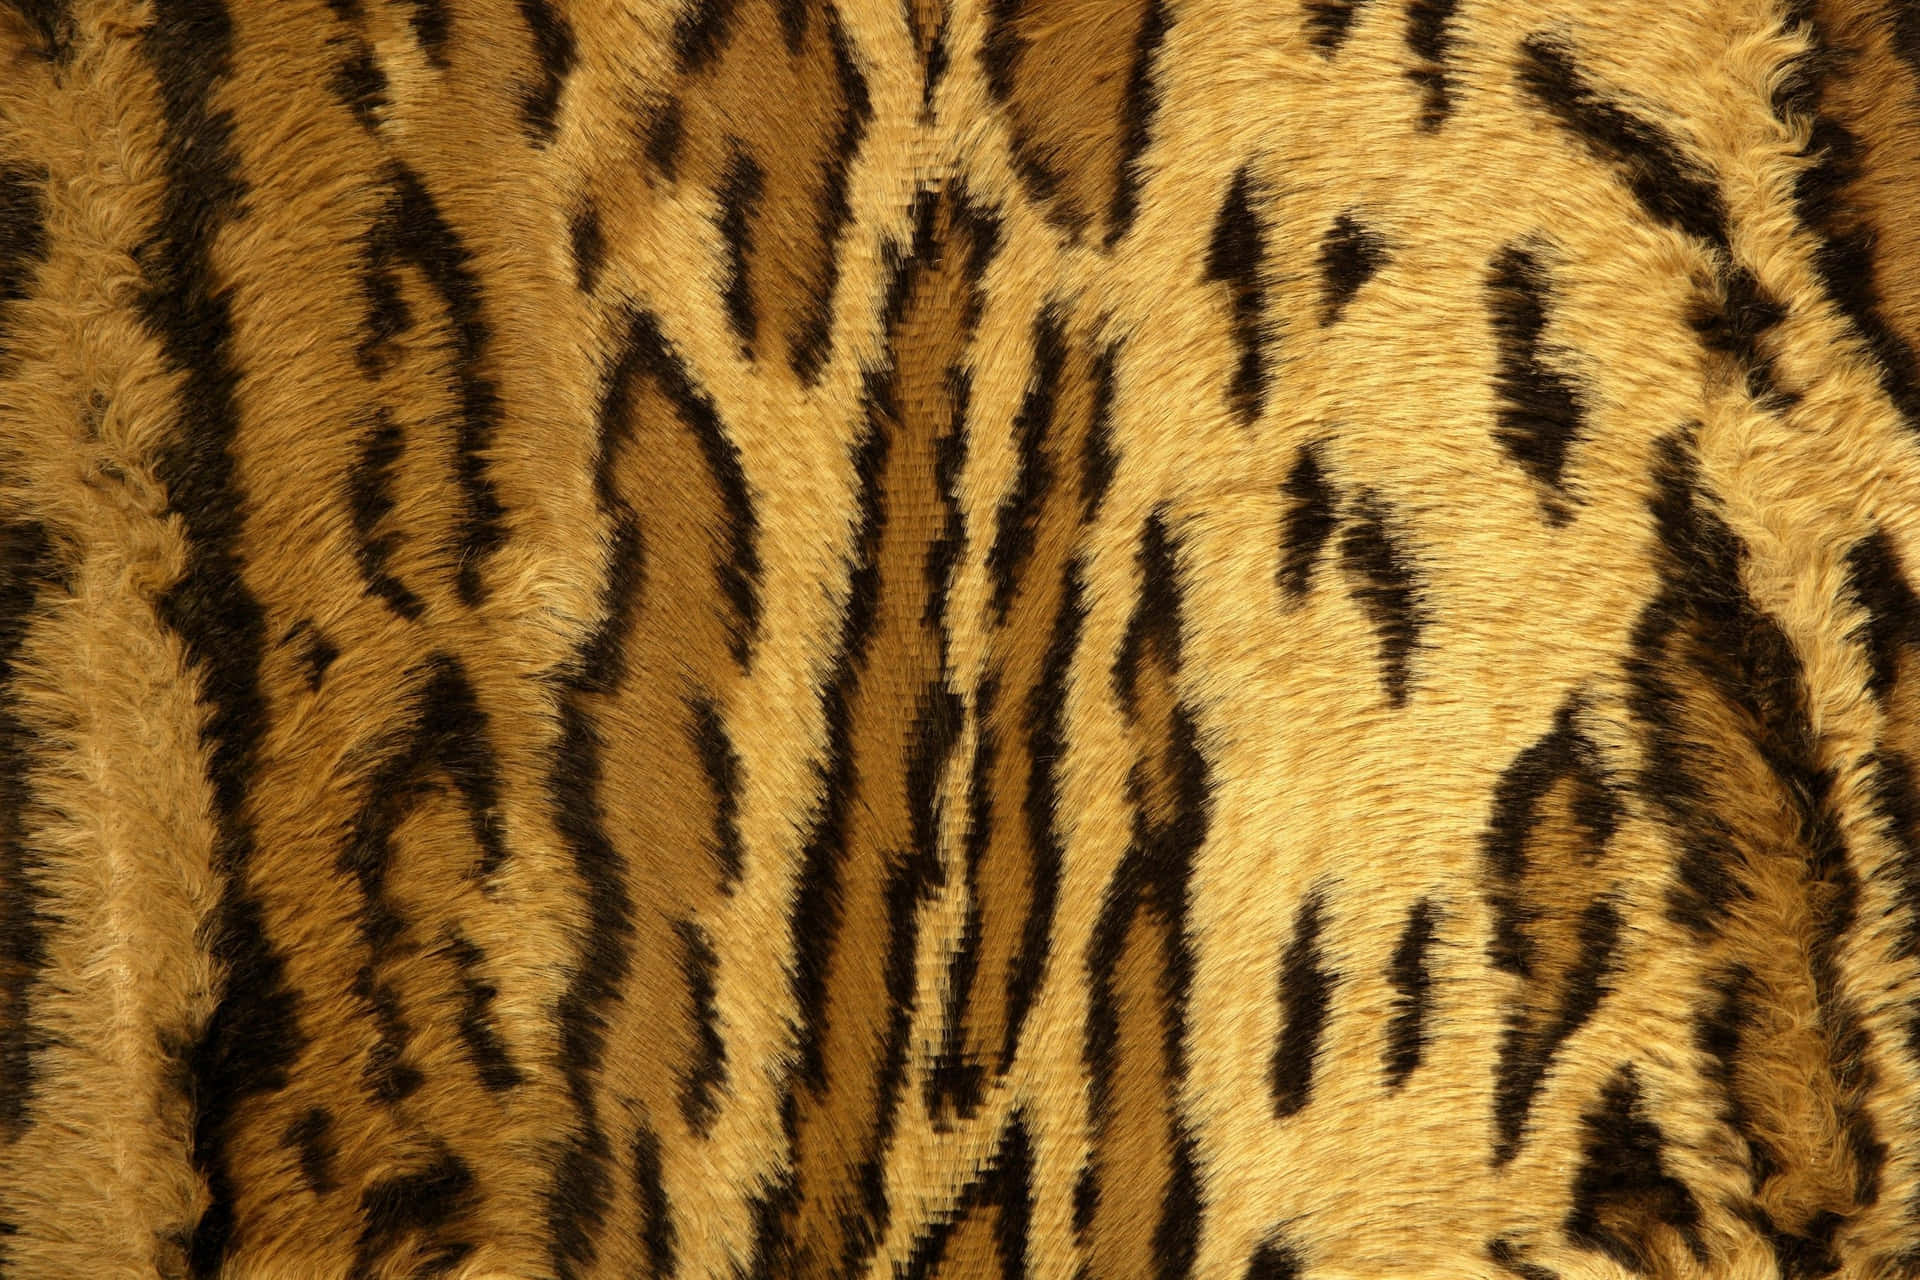 Tiger Skin Texture Background